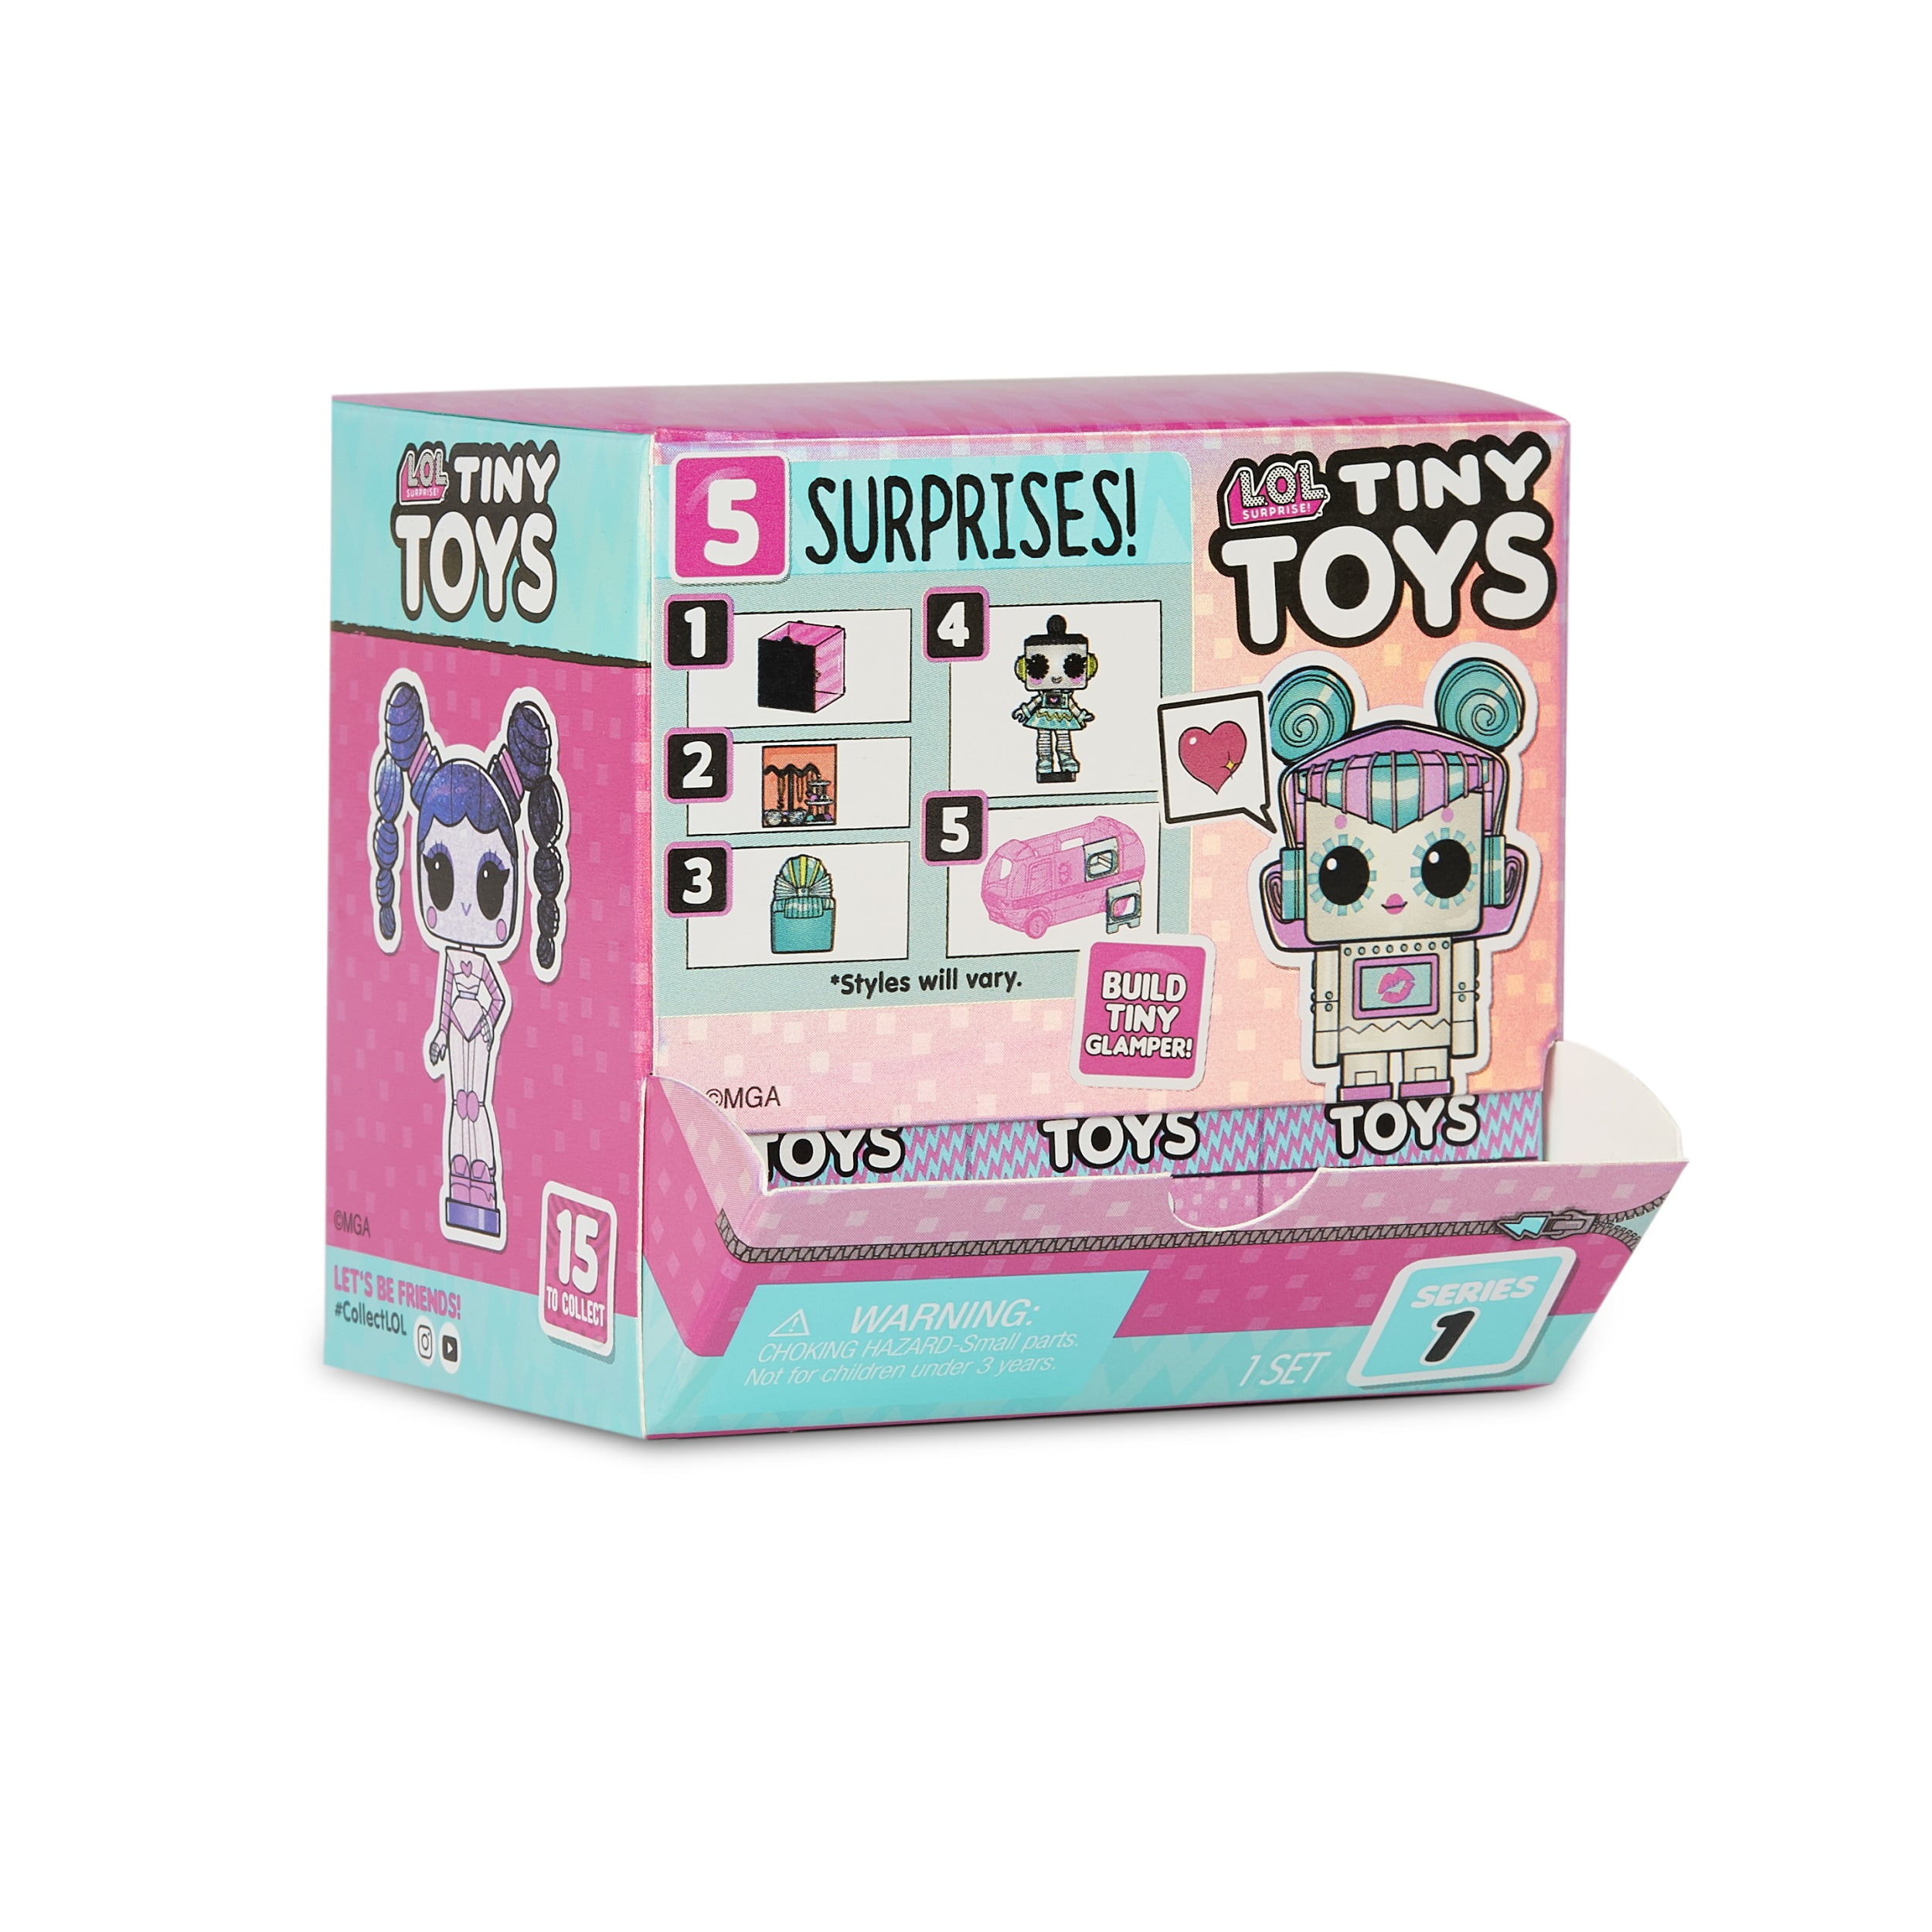 LOL Surprise TINY TOYS  Blind Box 5 Surprises Mini Robot Doll Glamper SERIES 1 